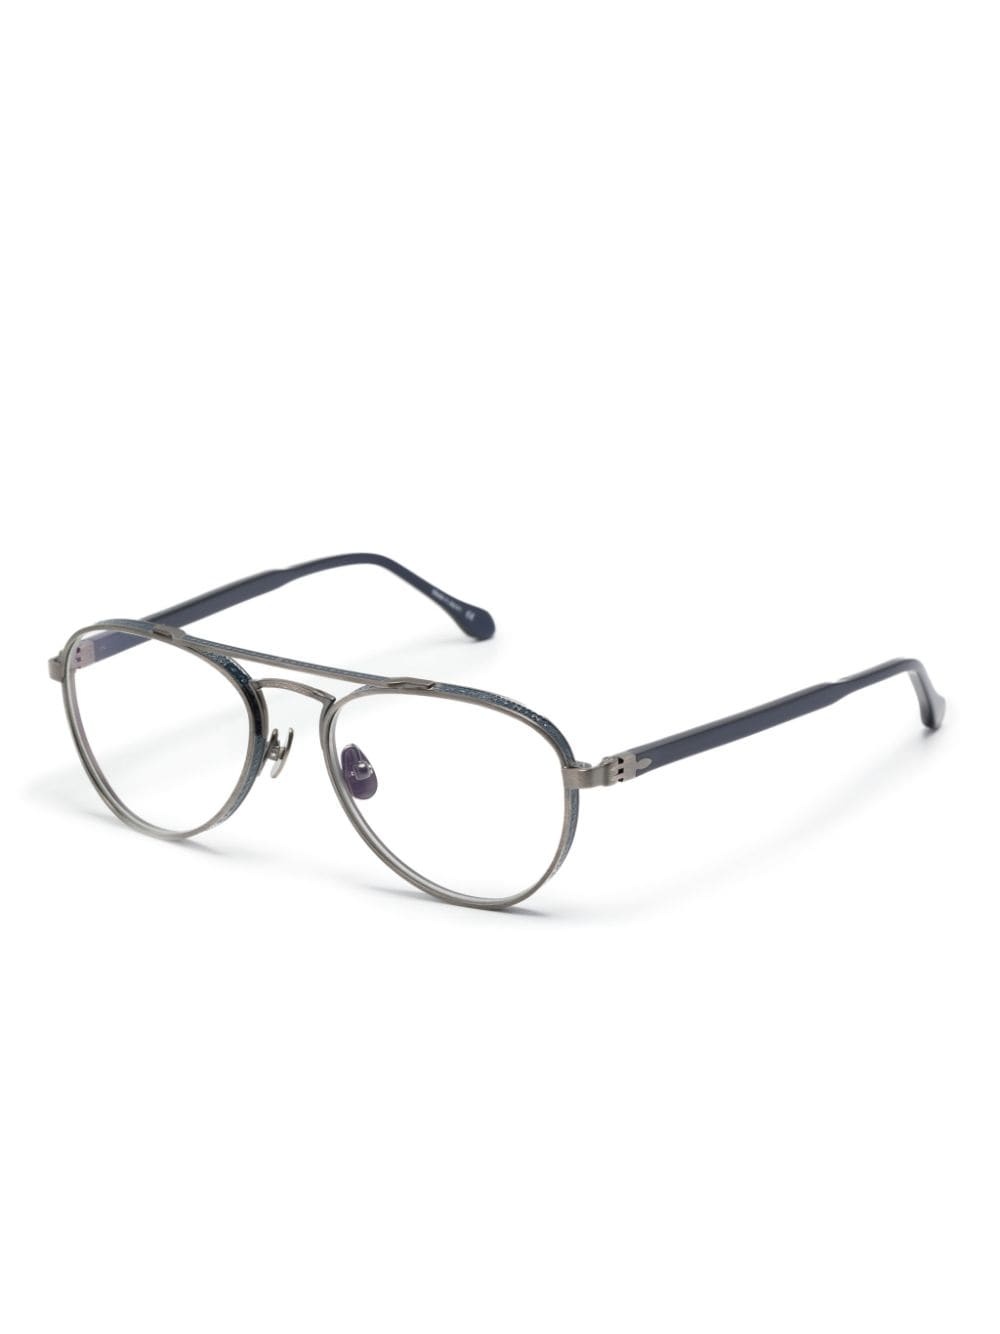 M3116 metal glasses - 2